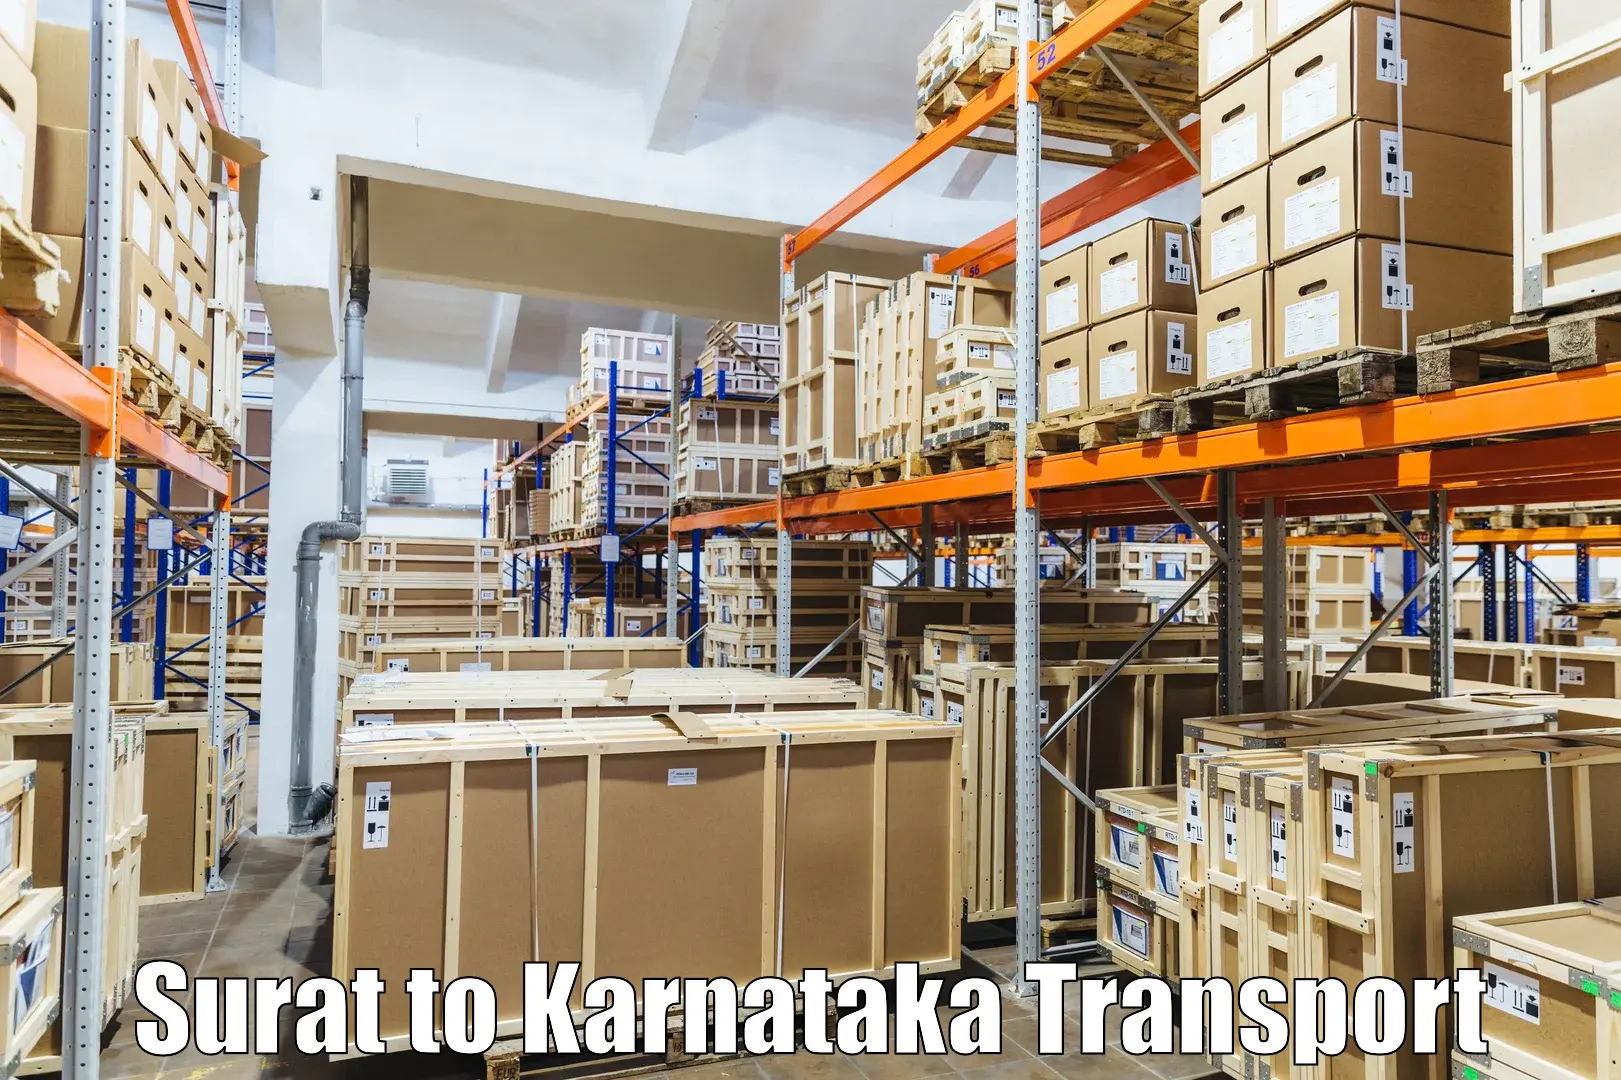 Cargo transportation services Surat to Krishnarajanagara